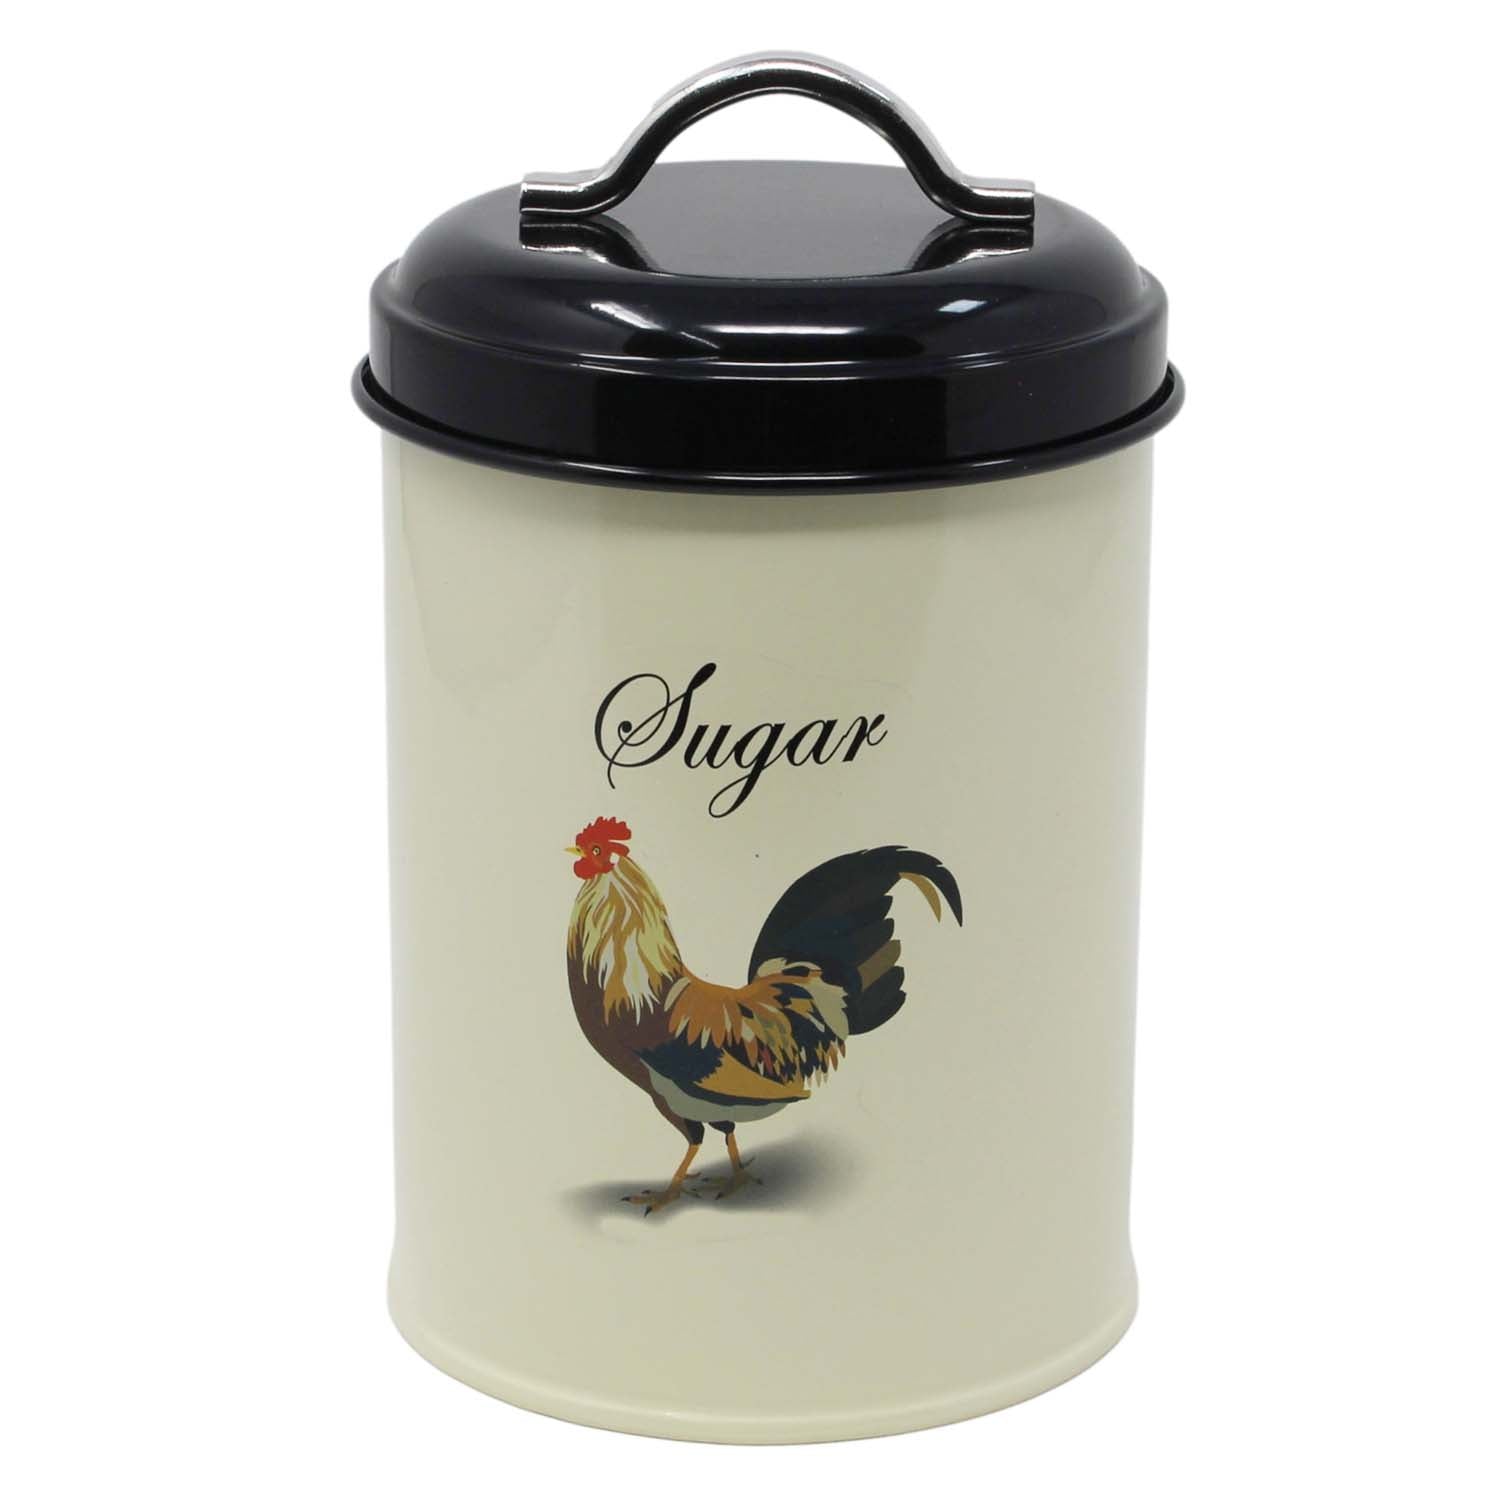 1.2L Cream Sugar Container Kitchen Storage Jar With Handle